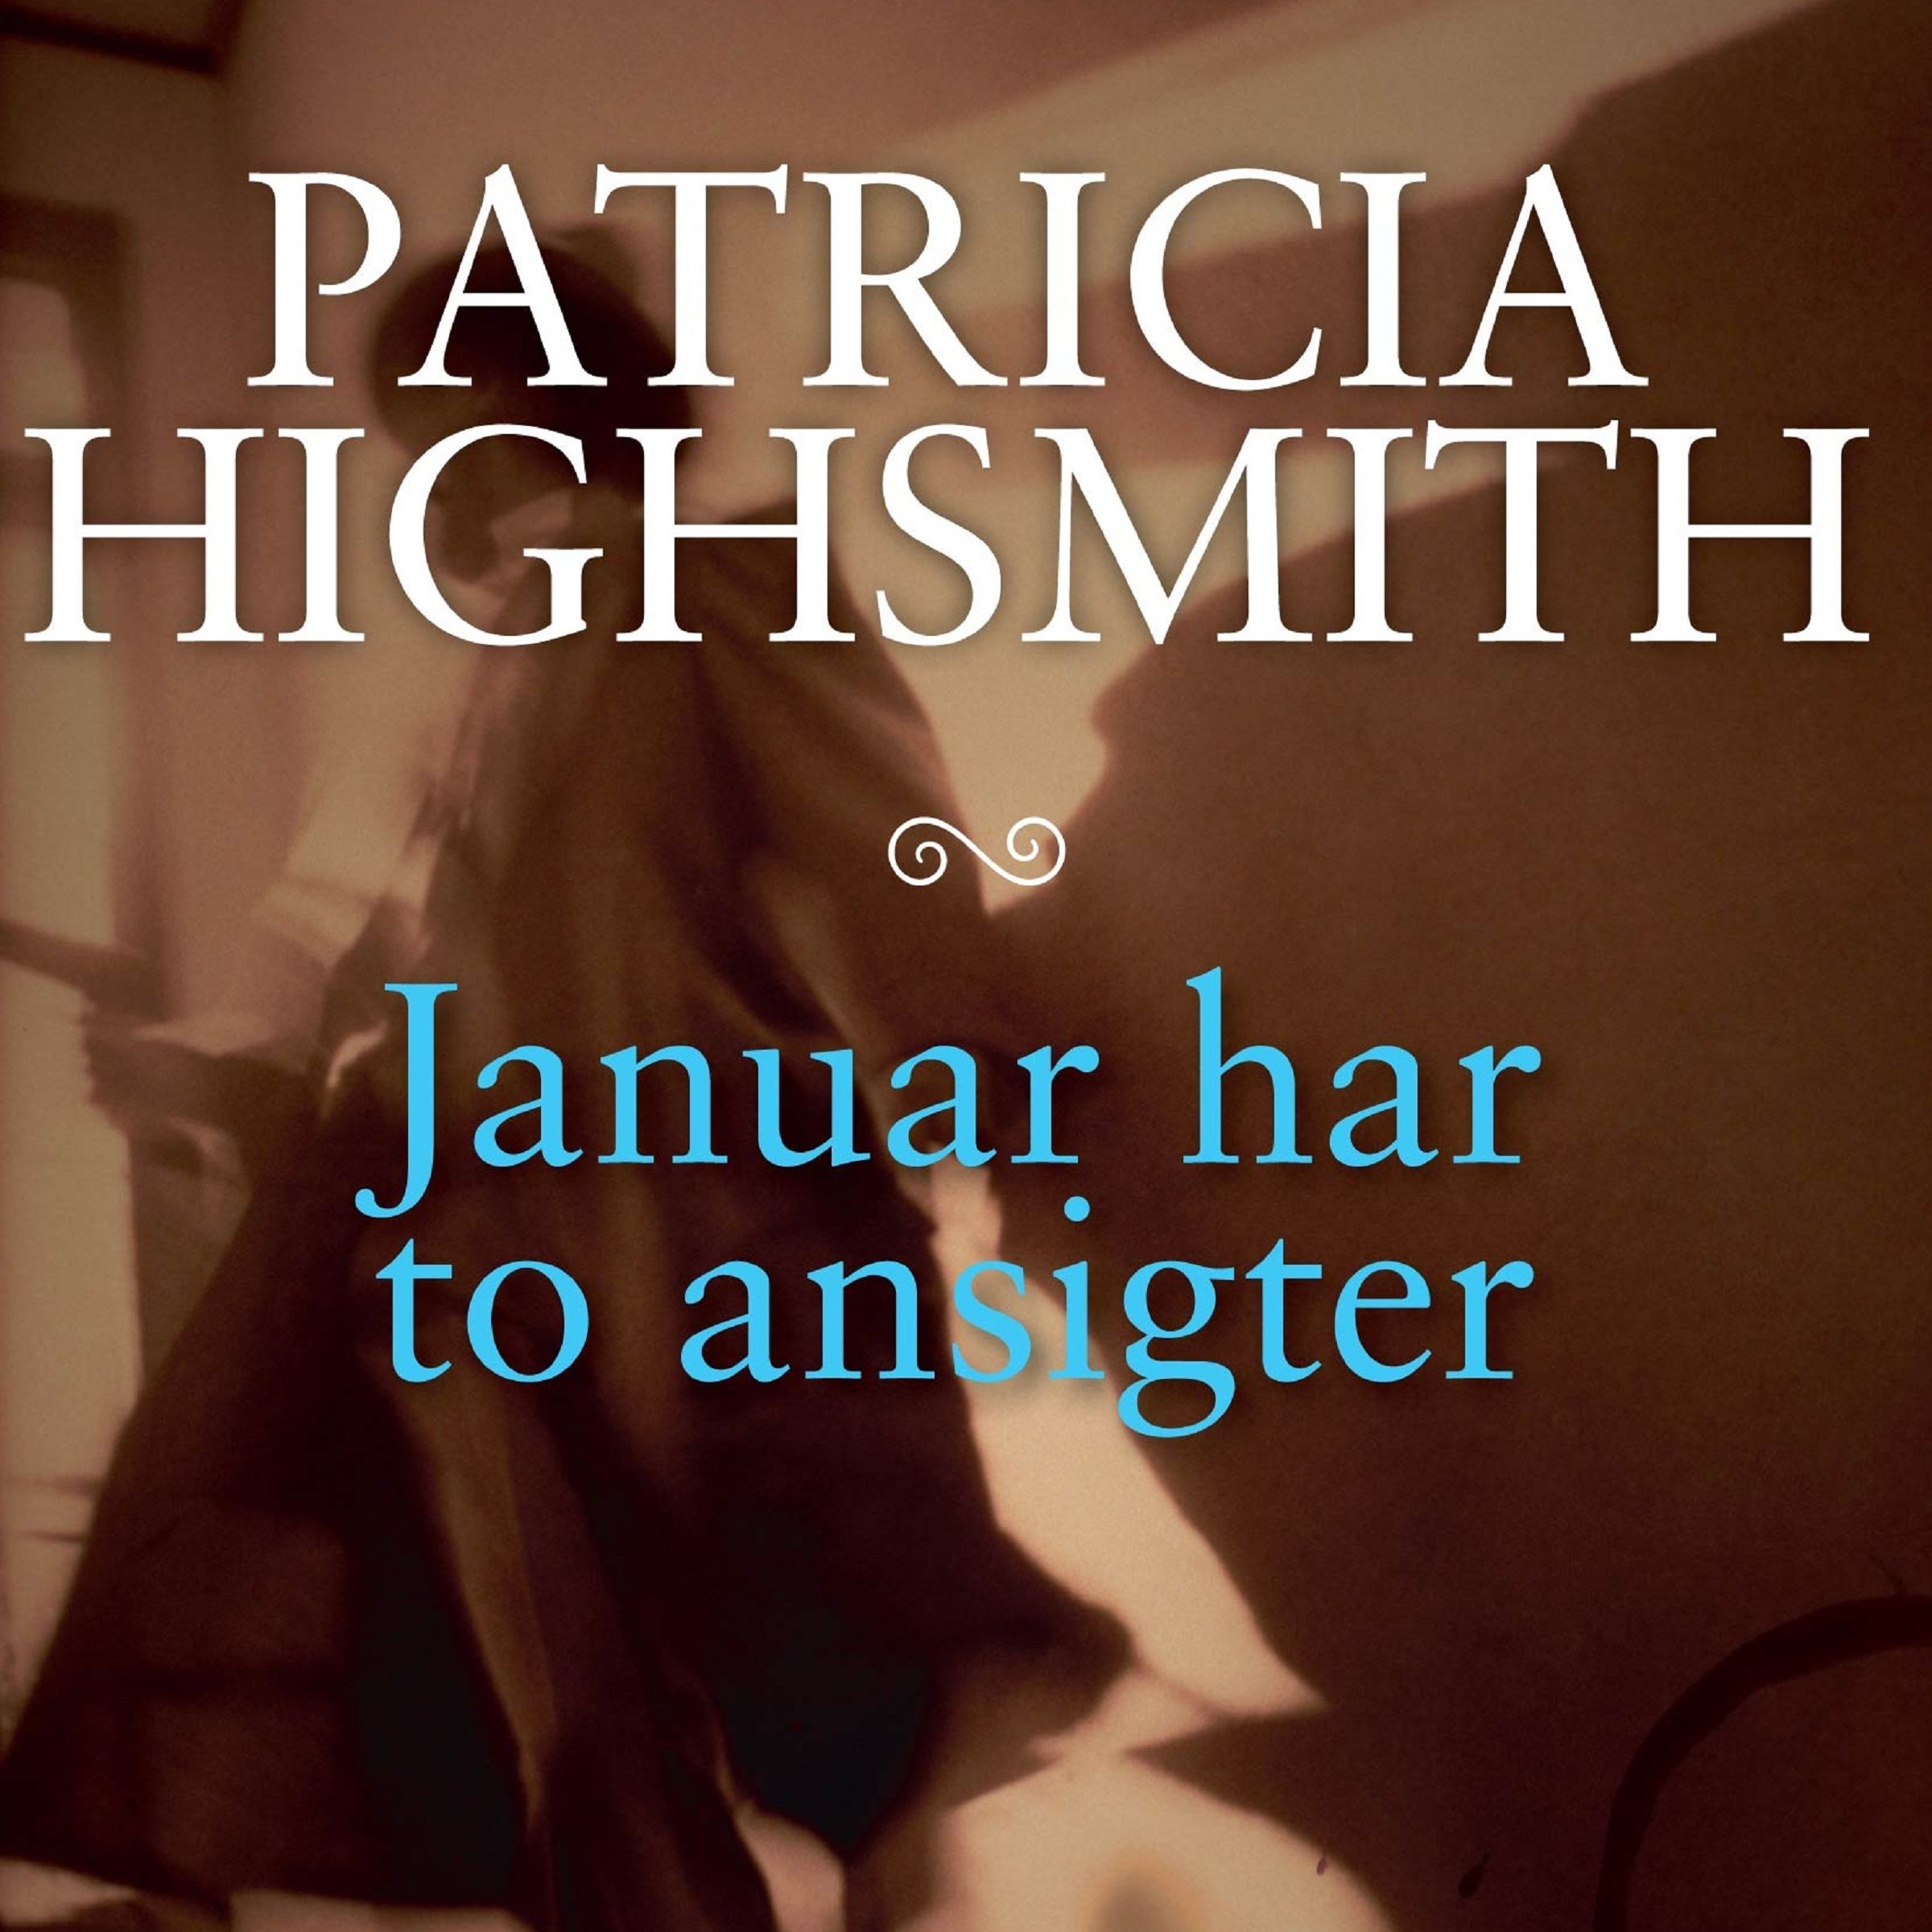 Januar har to ansigter, ljudbok av Patricia Highsmith